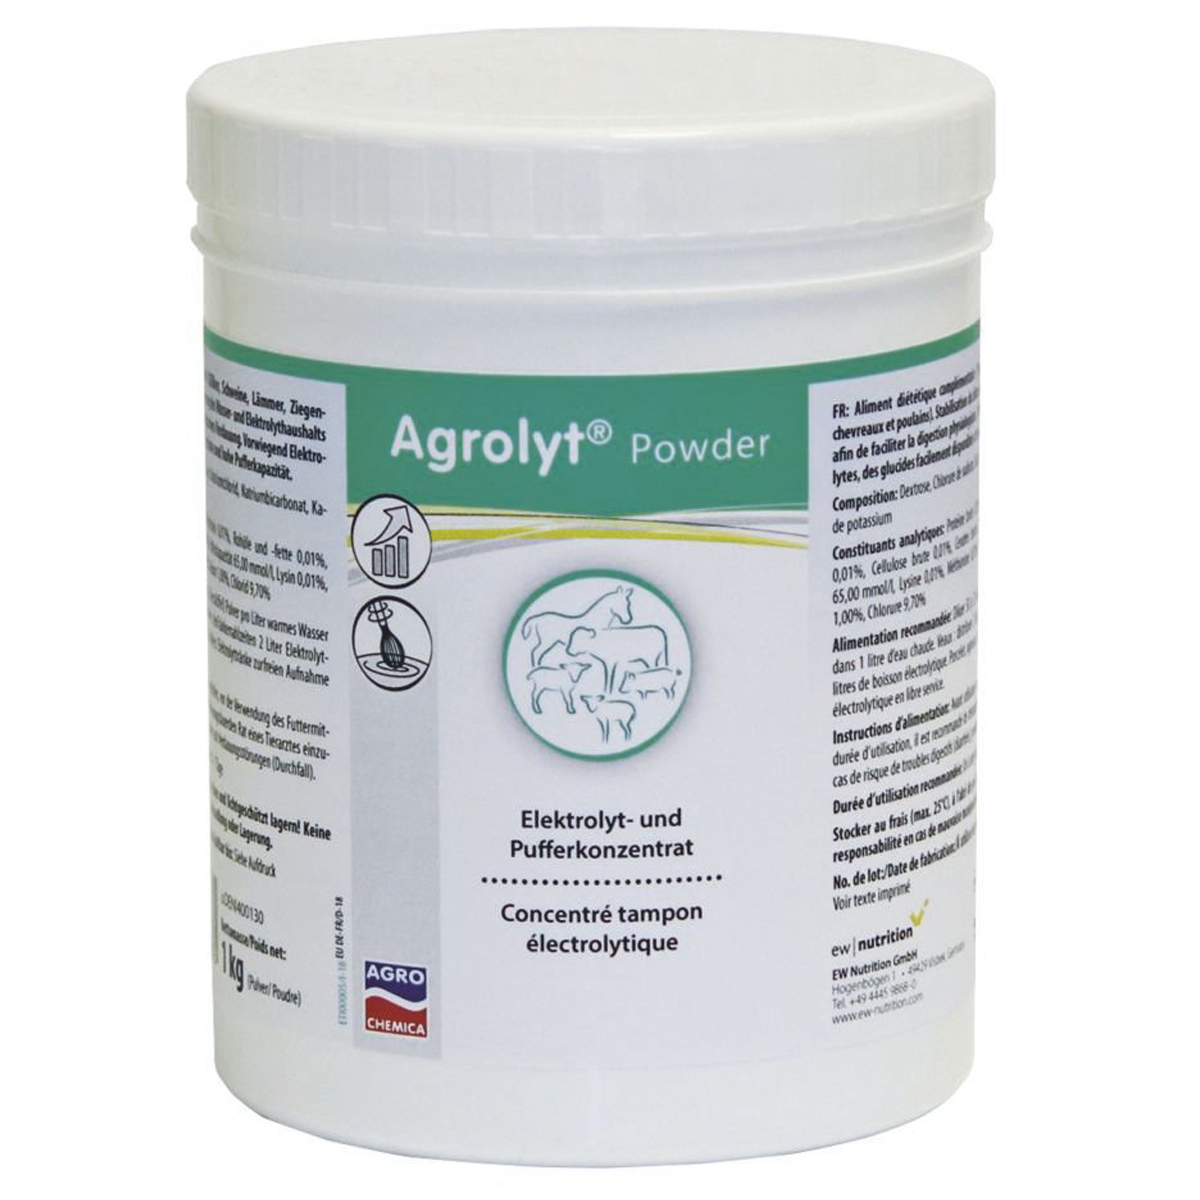 Agrolyt Powder concentrato elettrolitico per vitelli suini agnelli e puledri 1 kg